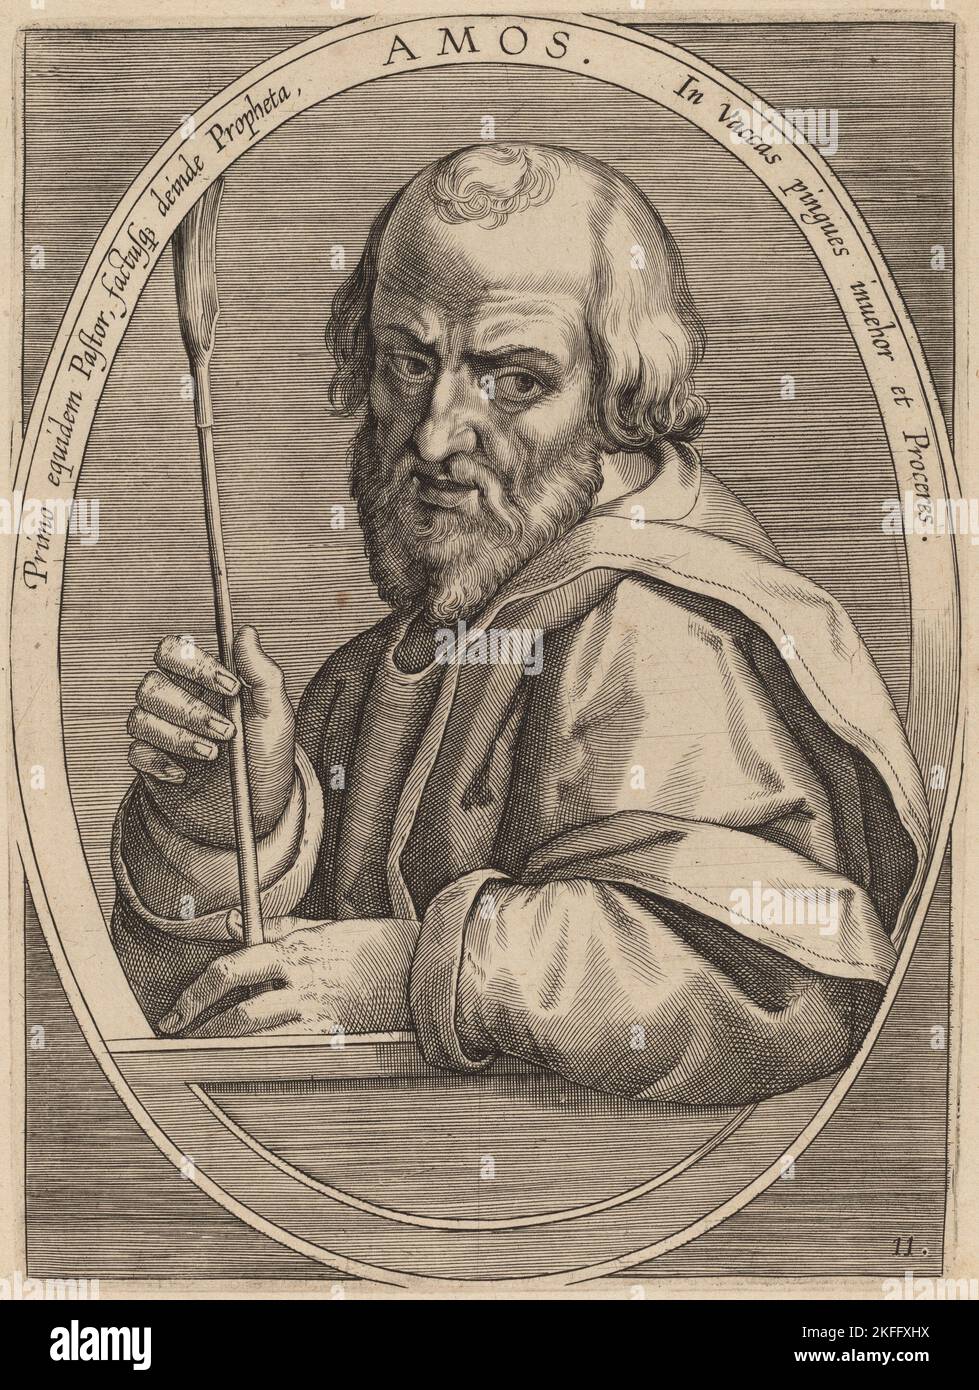 Amos, published 1613. Stock Photo